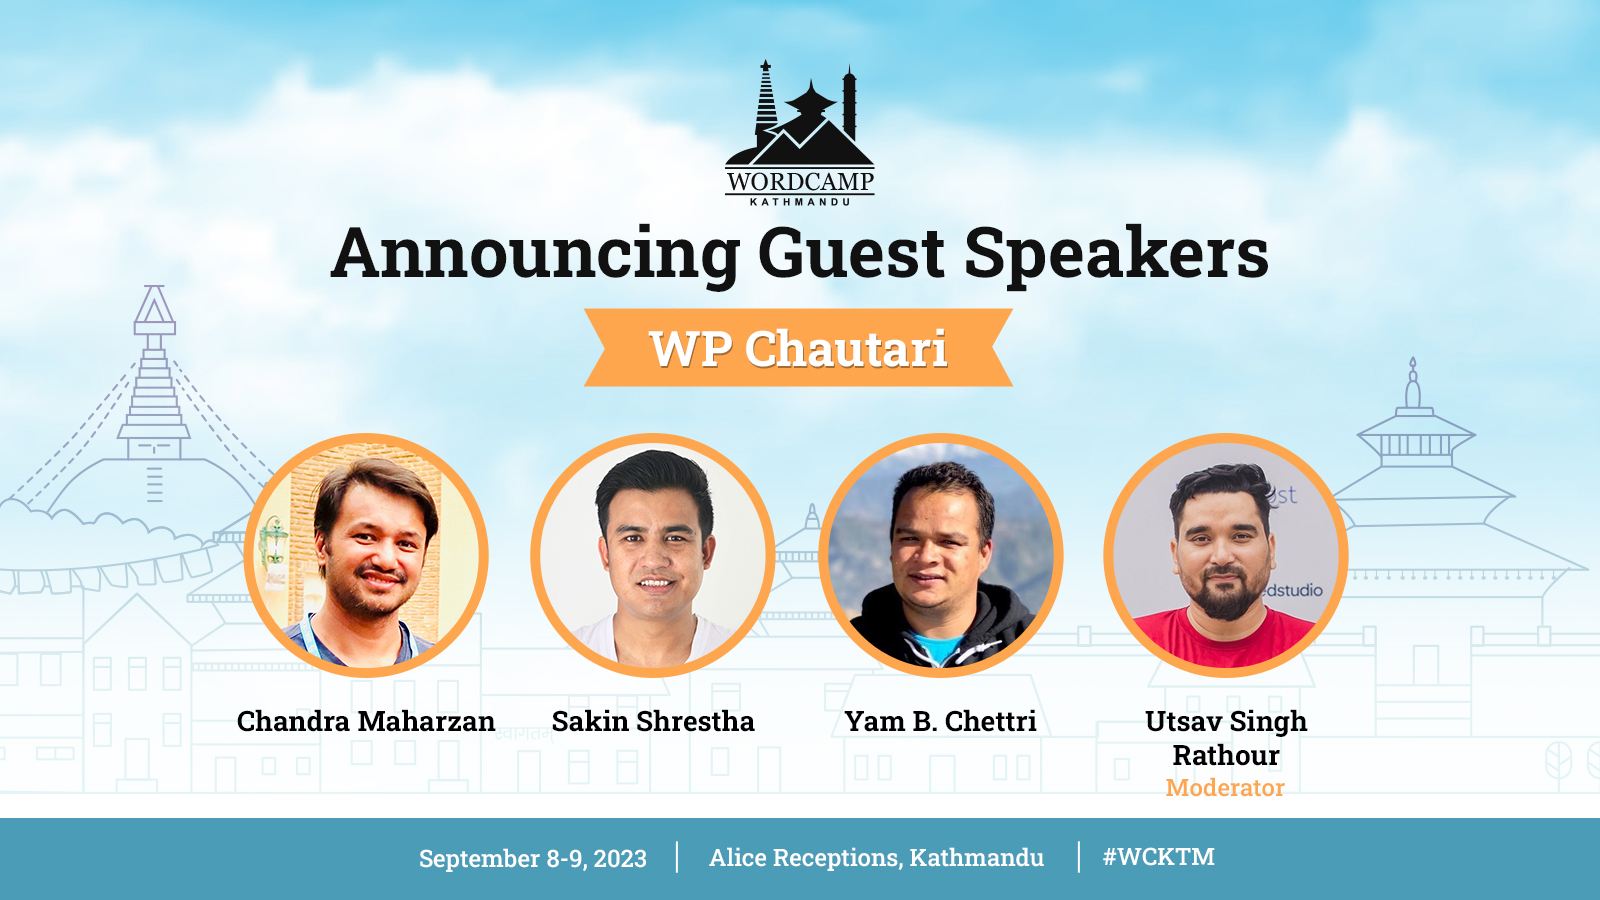 Guest Speakers for WP Chautari at WordCamp Kathmandu 2023